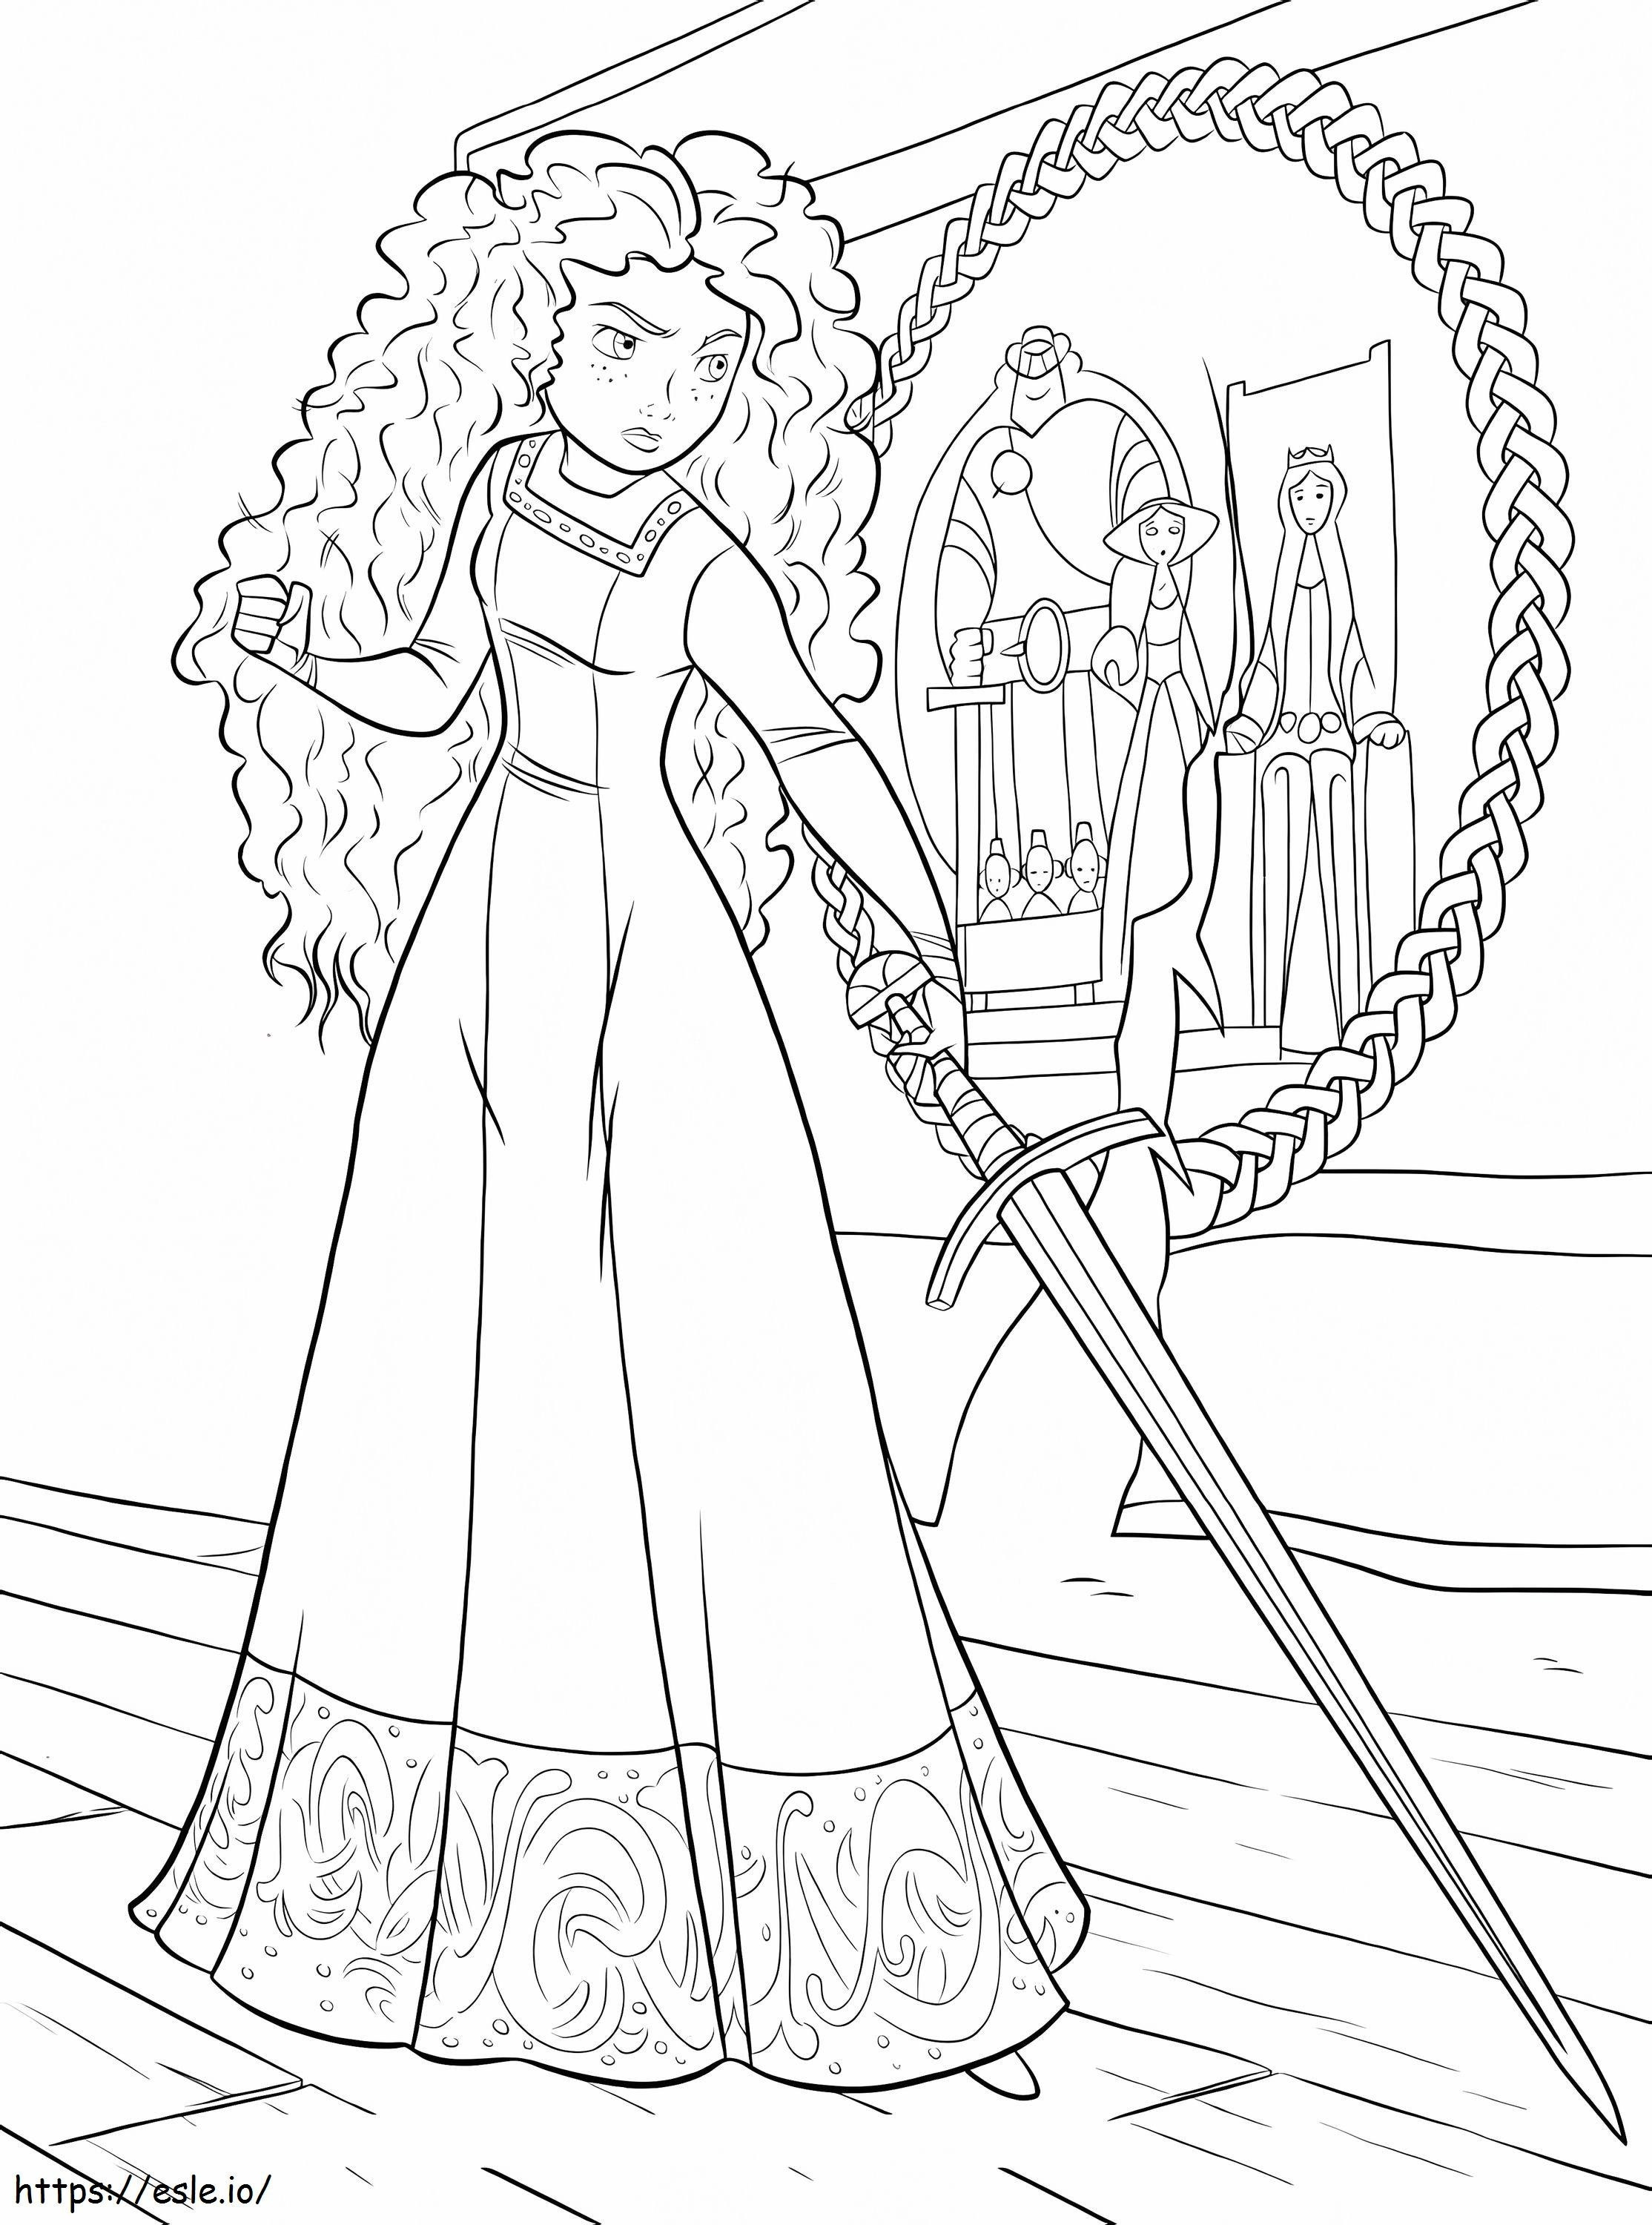 Prinzessin Merida mit Schwert ausmalbilder